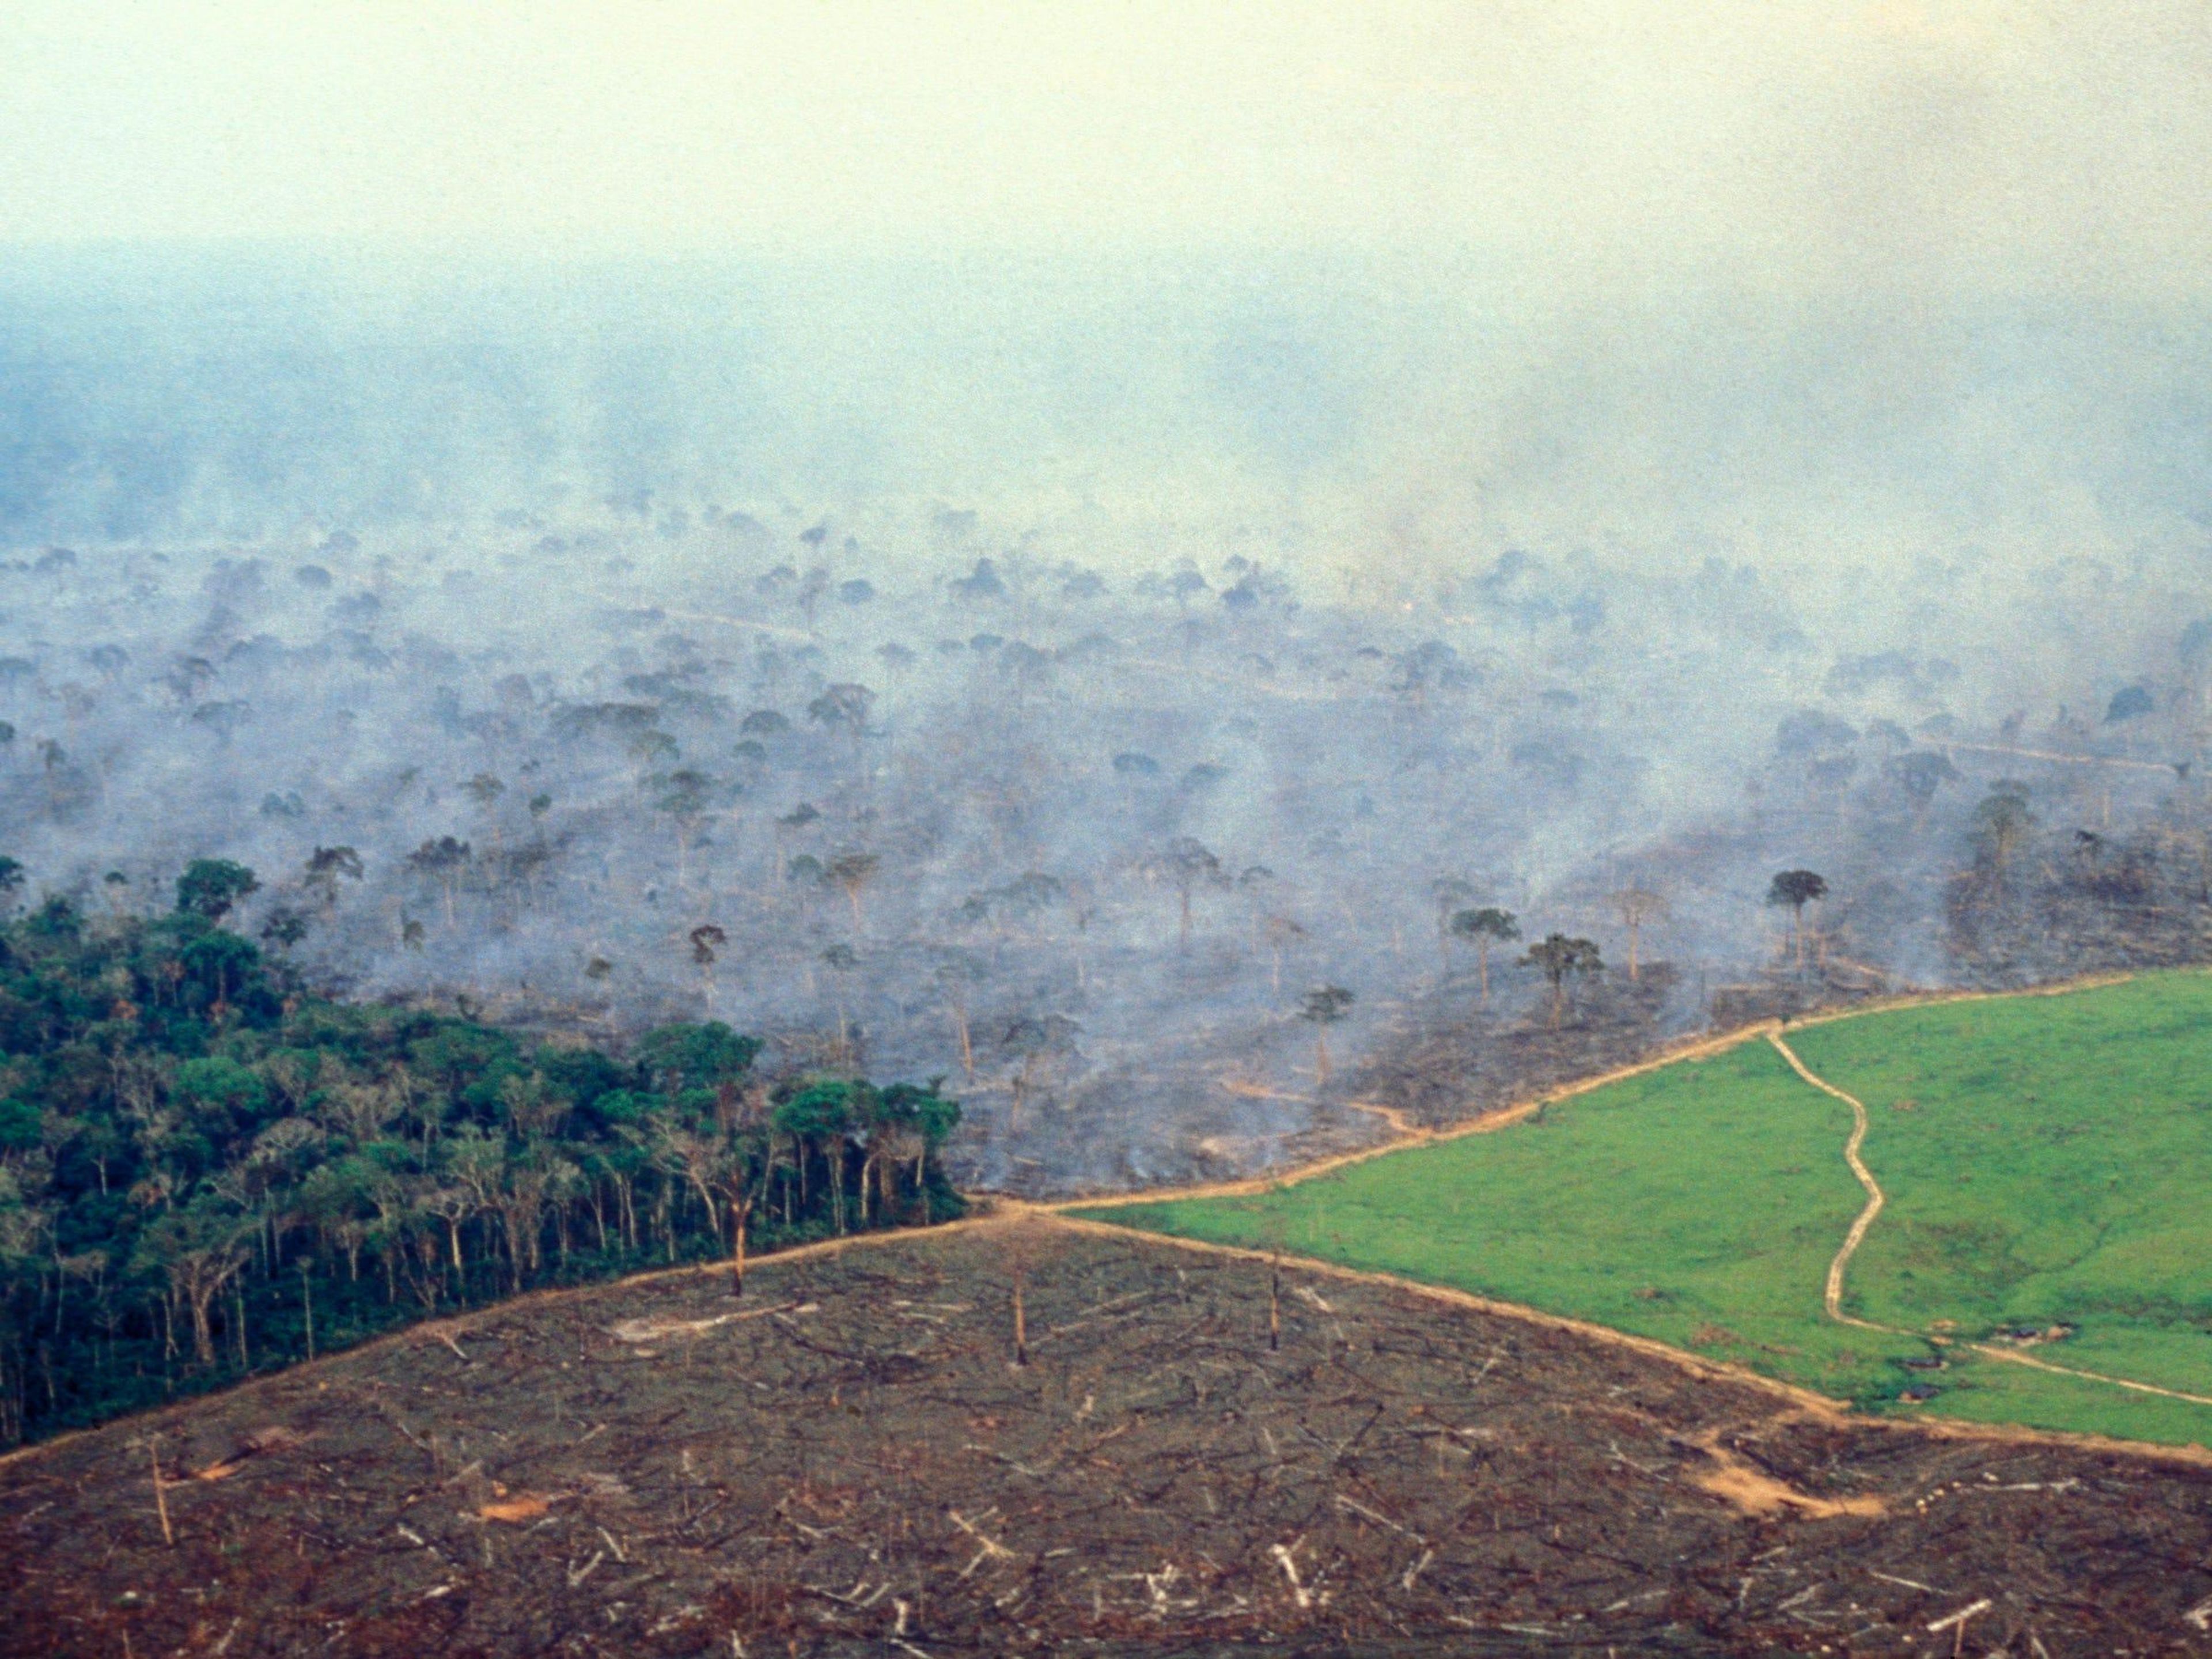 Las 4 etapas de la gestión de la tierra en una gran granja de ganado en la Amazonia brasileña.